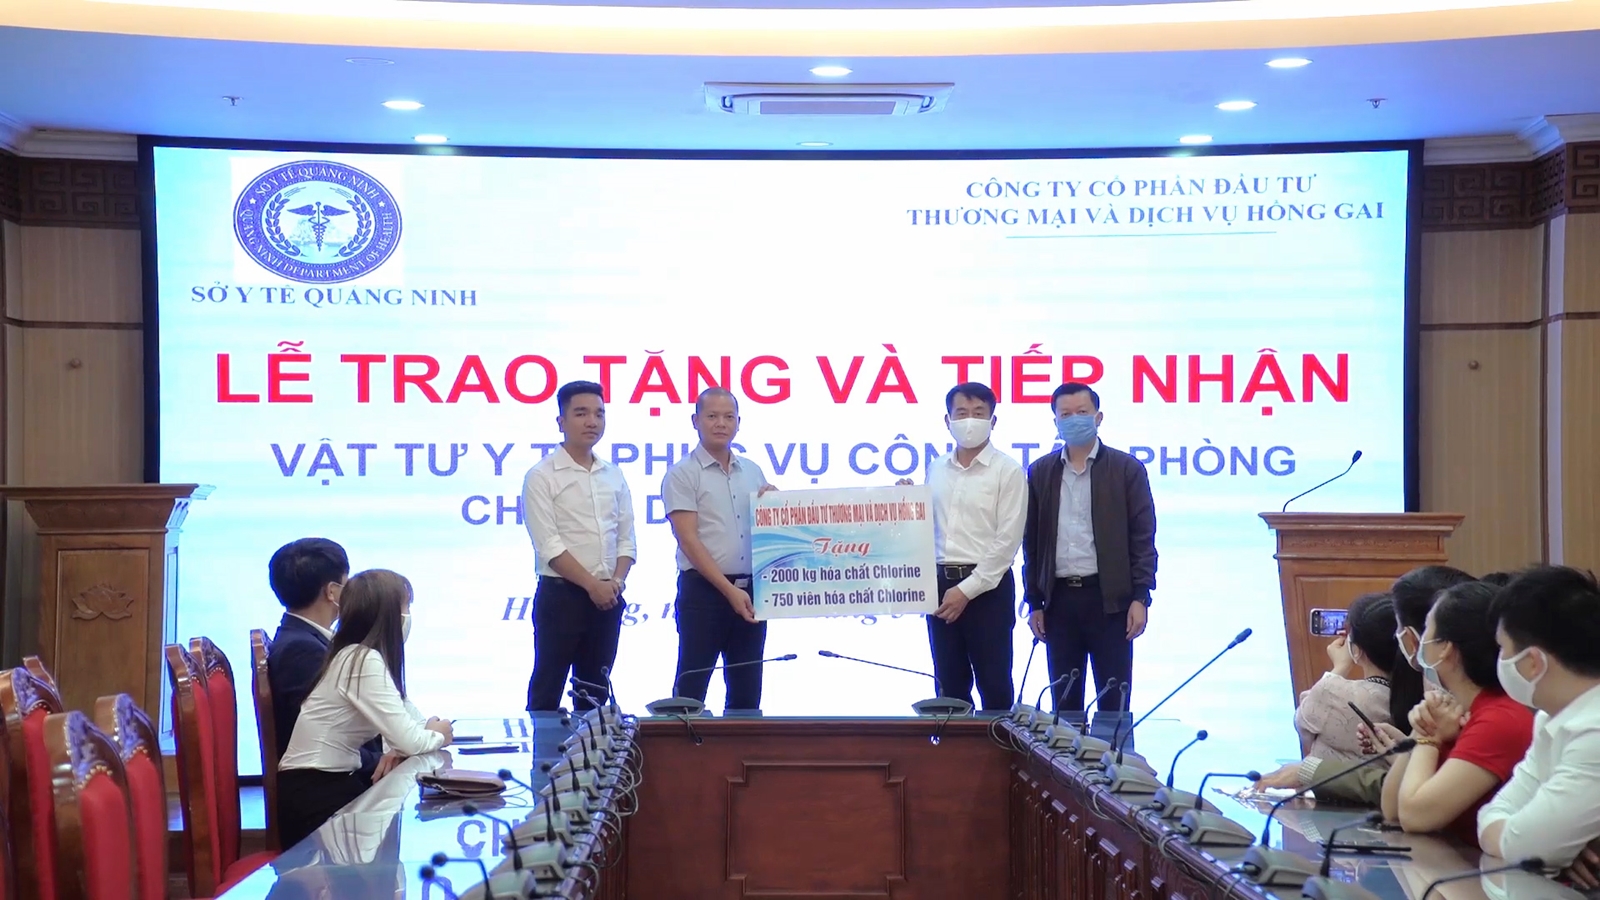 Công ty CP Đầu tư thương mại và dịch vụ Hồng Gai tặng vật tư y tế cho ngành Y tế Quảng Ninh.